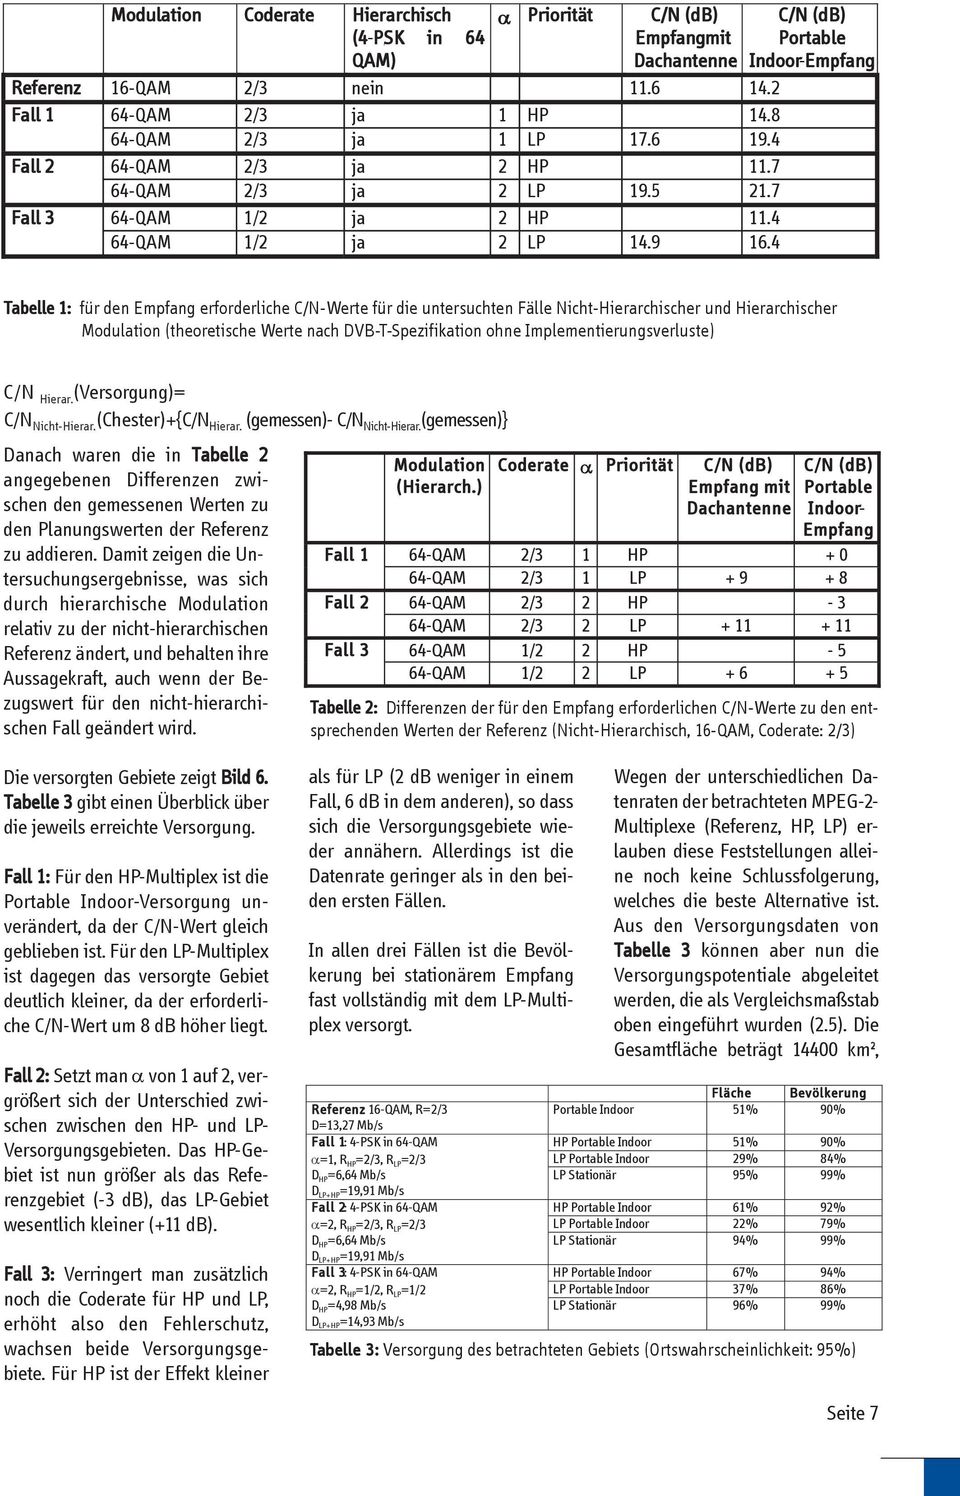 4 C/N (db) Portable Indoor-Empfang Tabelle 1: für den Empfang erforderliche C/N-Werte für die untersuchten Fälle Nicht-Hierarchischer und Hierarchischer Modulation (theoretische Werte nach